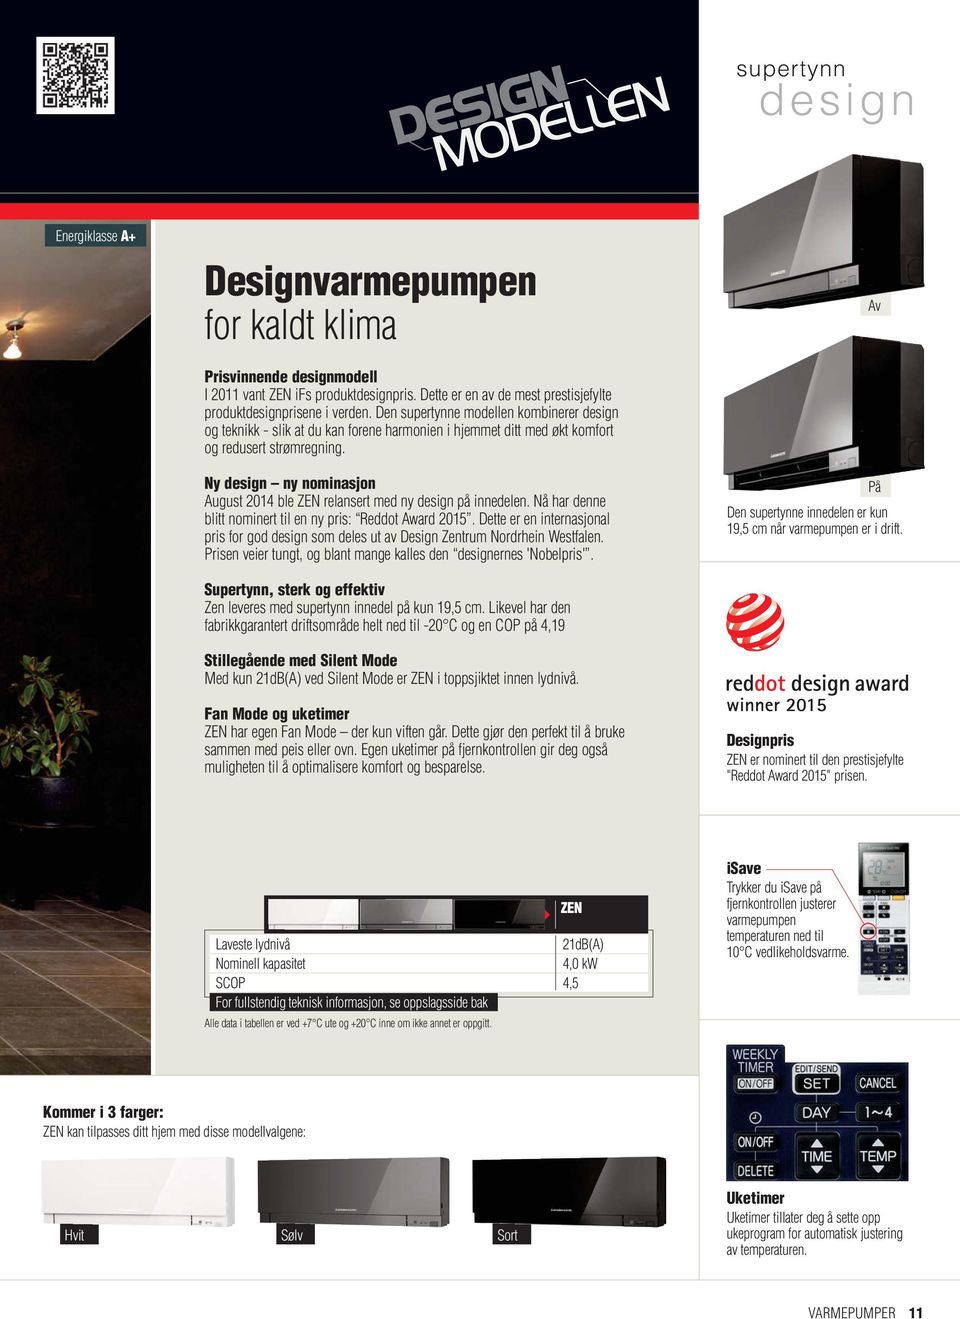 Ny design ny nominasjon August 2014 ble ZEN relansert med ny design på innedelen. Nå har denne blitt nominert til en ny pris: Reddot Award 2015.